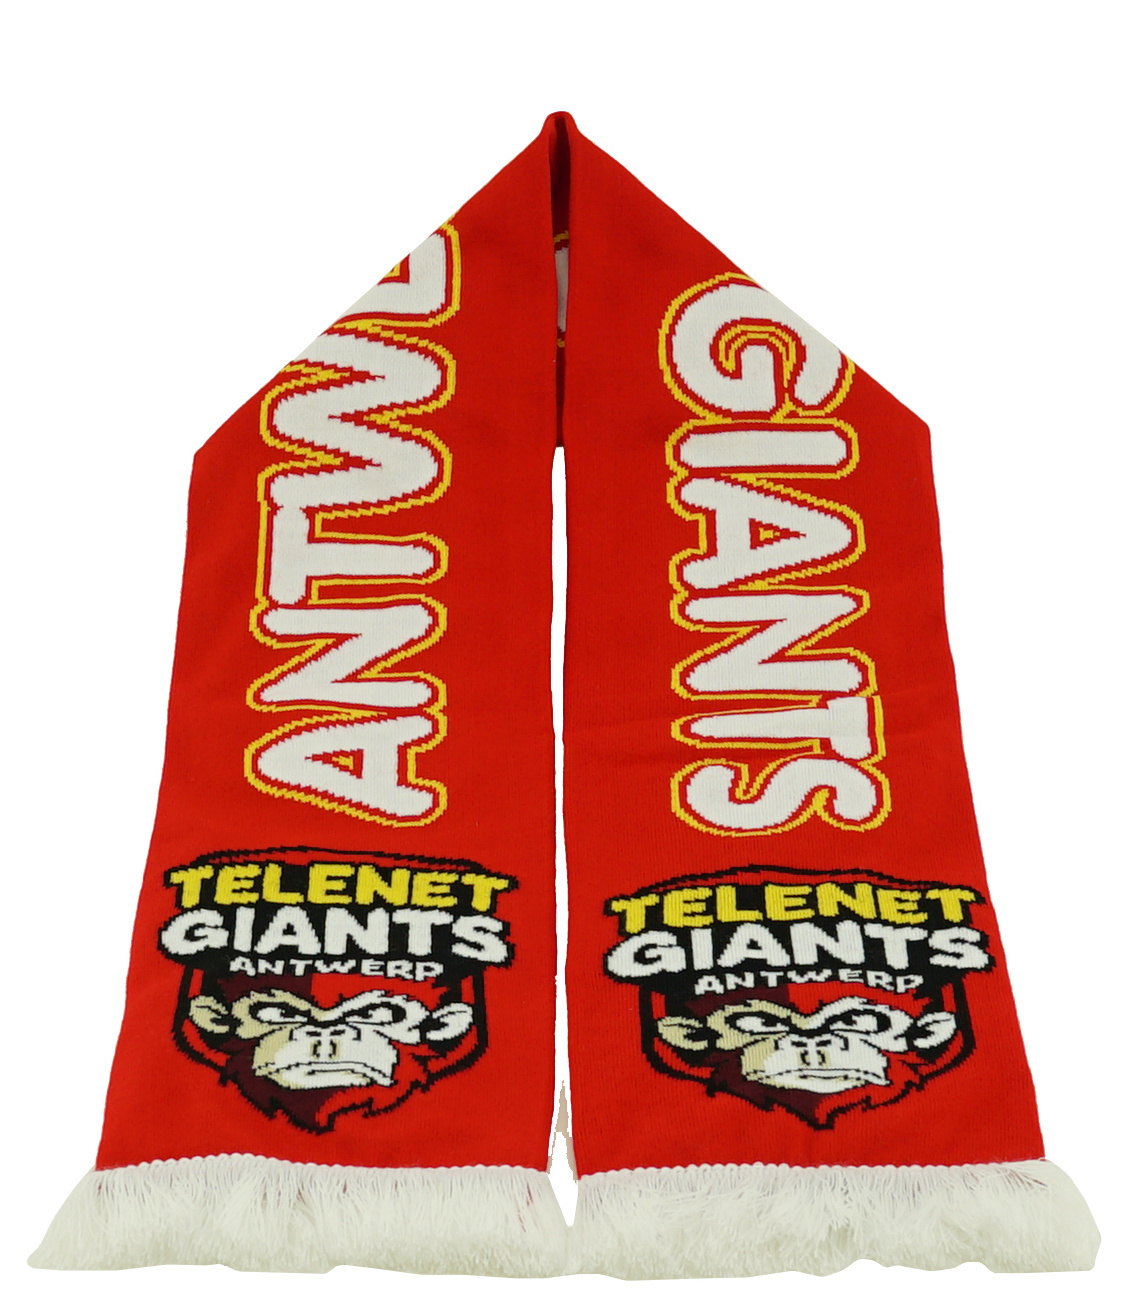 Topfanz Sjaal logo  Antwerp Giants